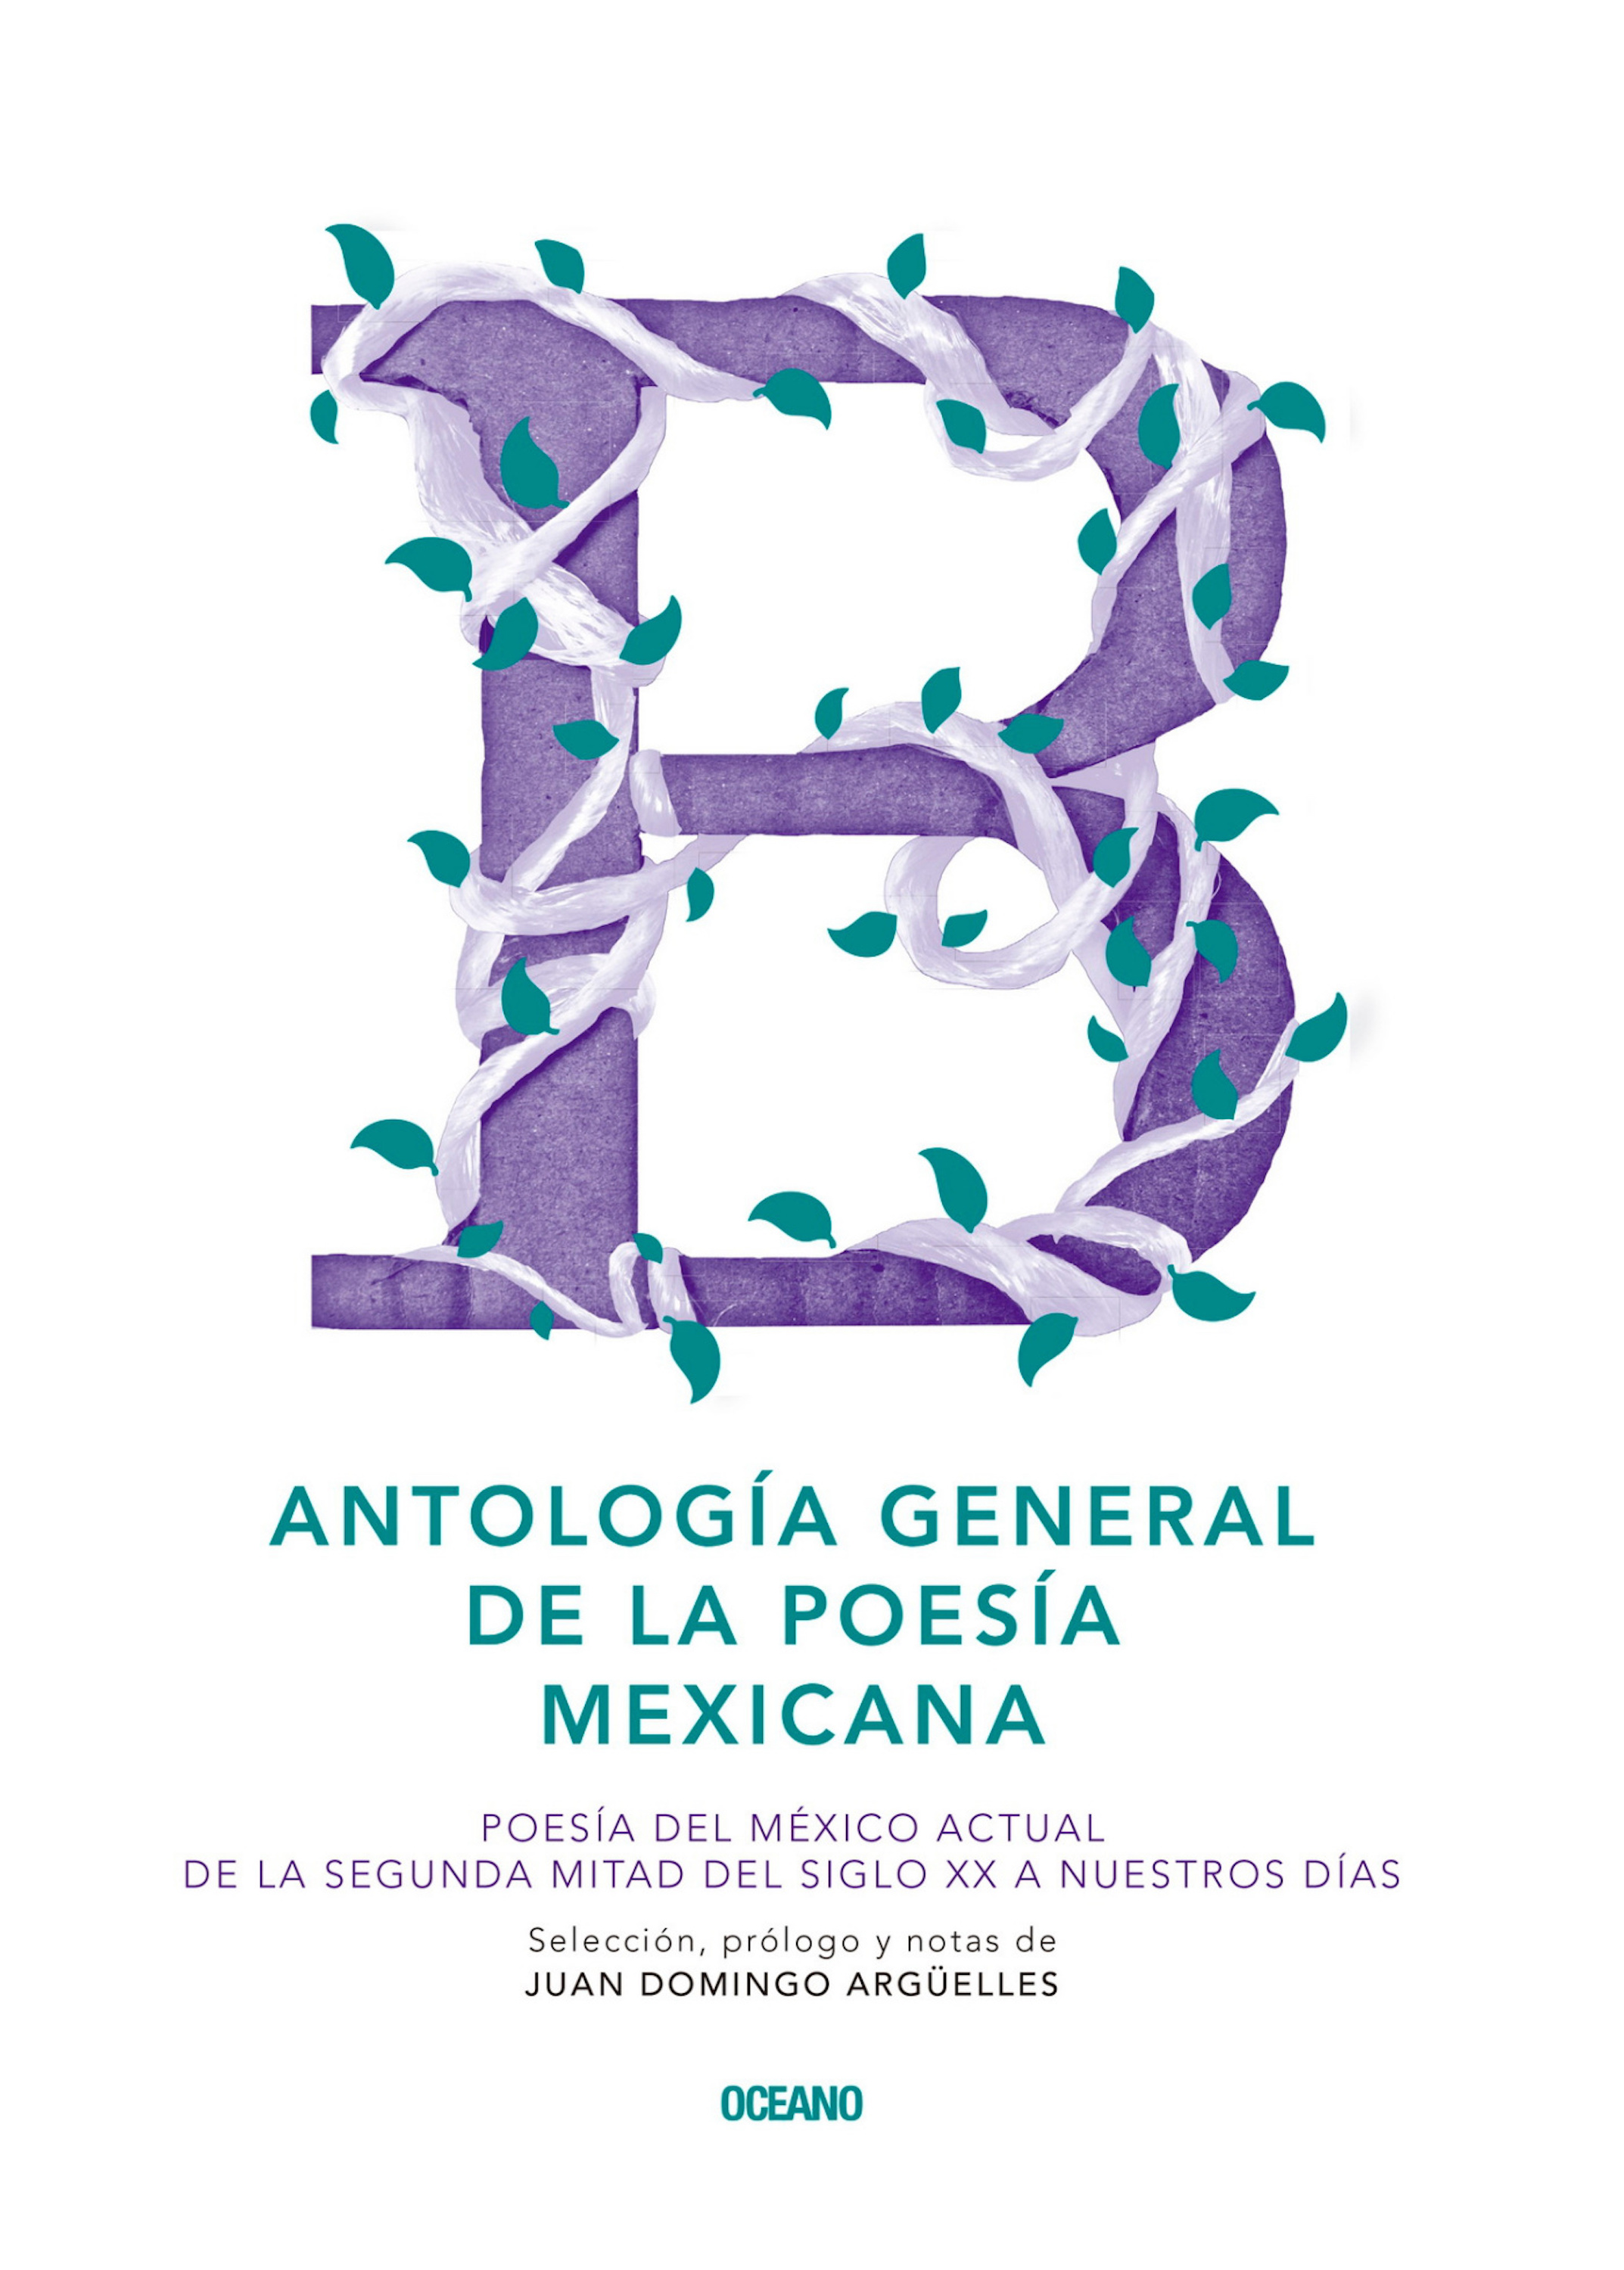 Скачать Antología general de la poesía mexicana - Juan Domingo  Arguelles